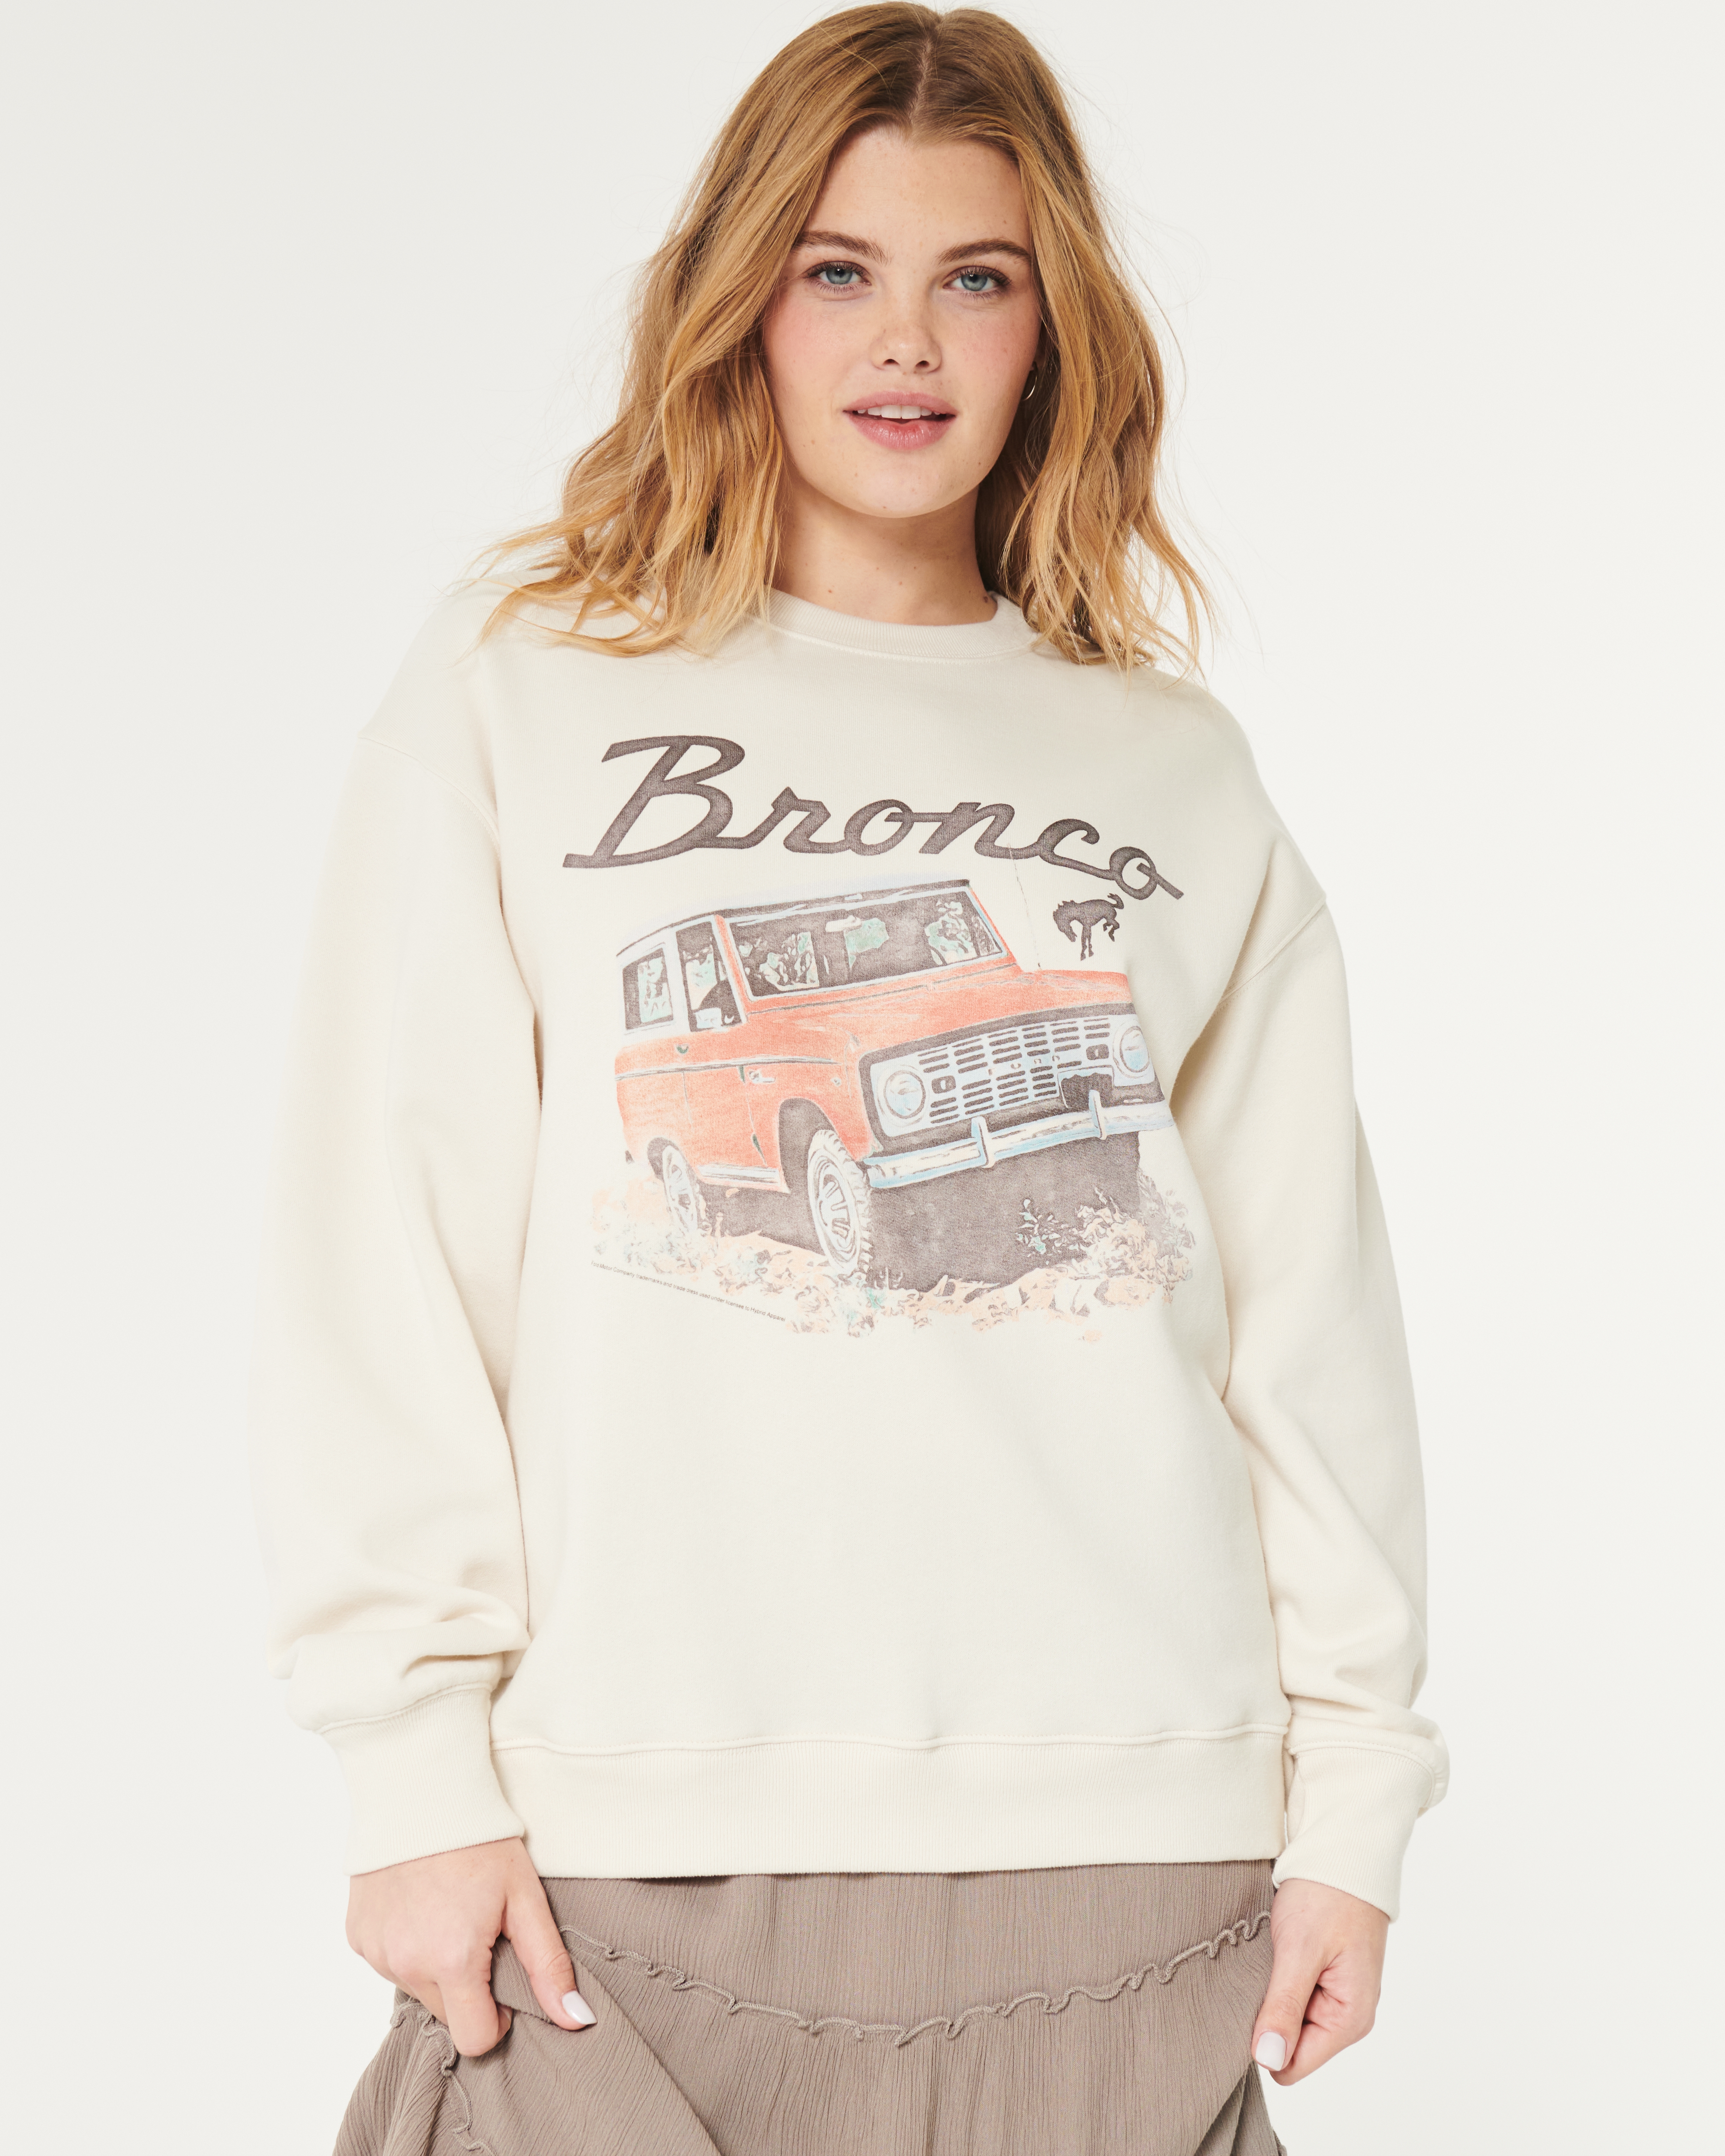 Oversized Ford Bronco Graphic Crew Sweatshirt